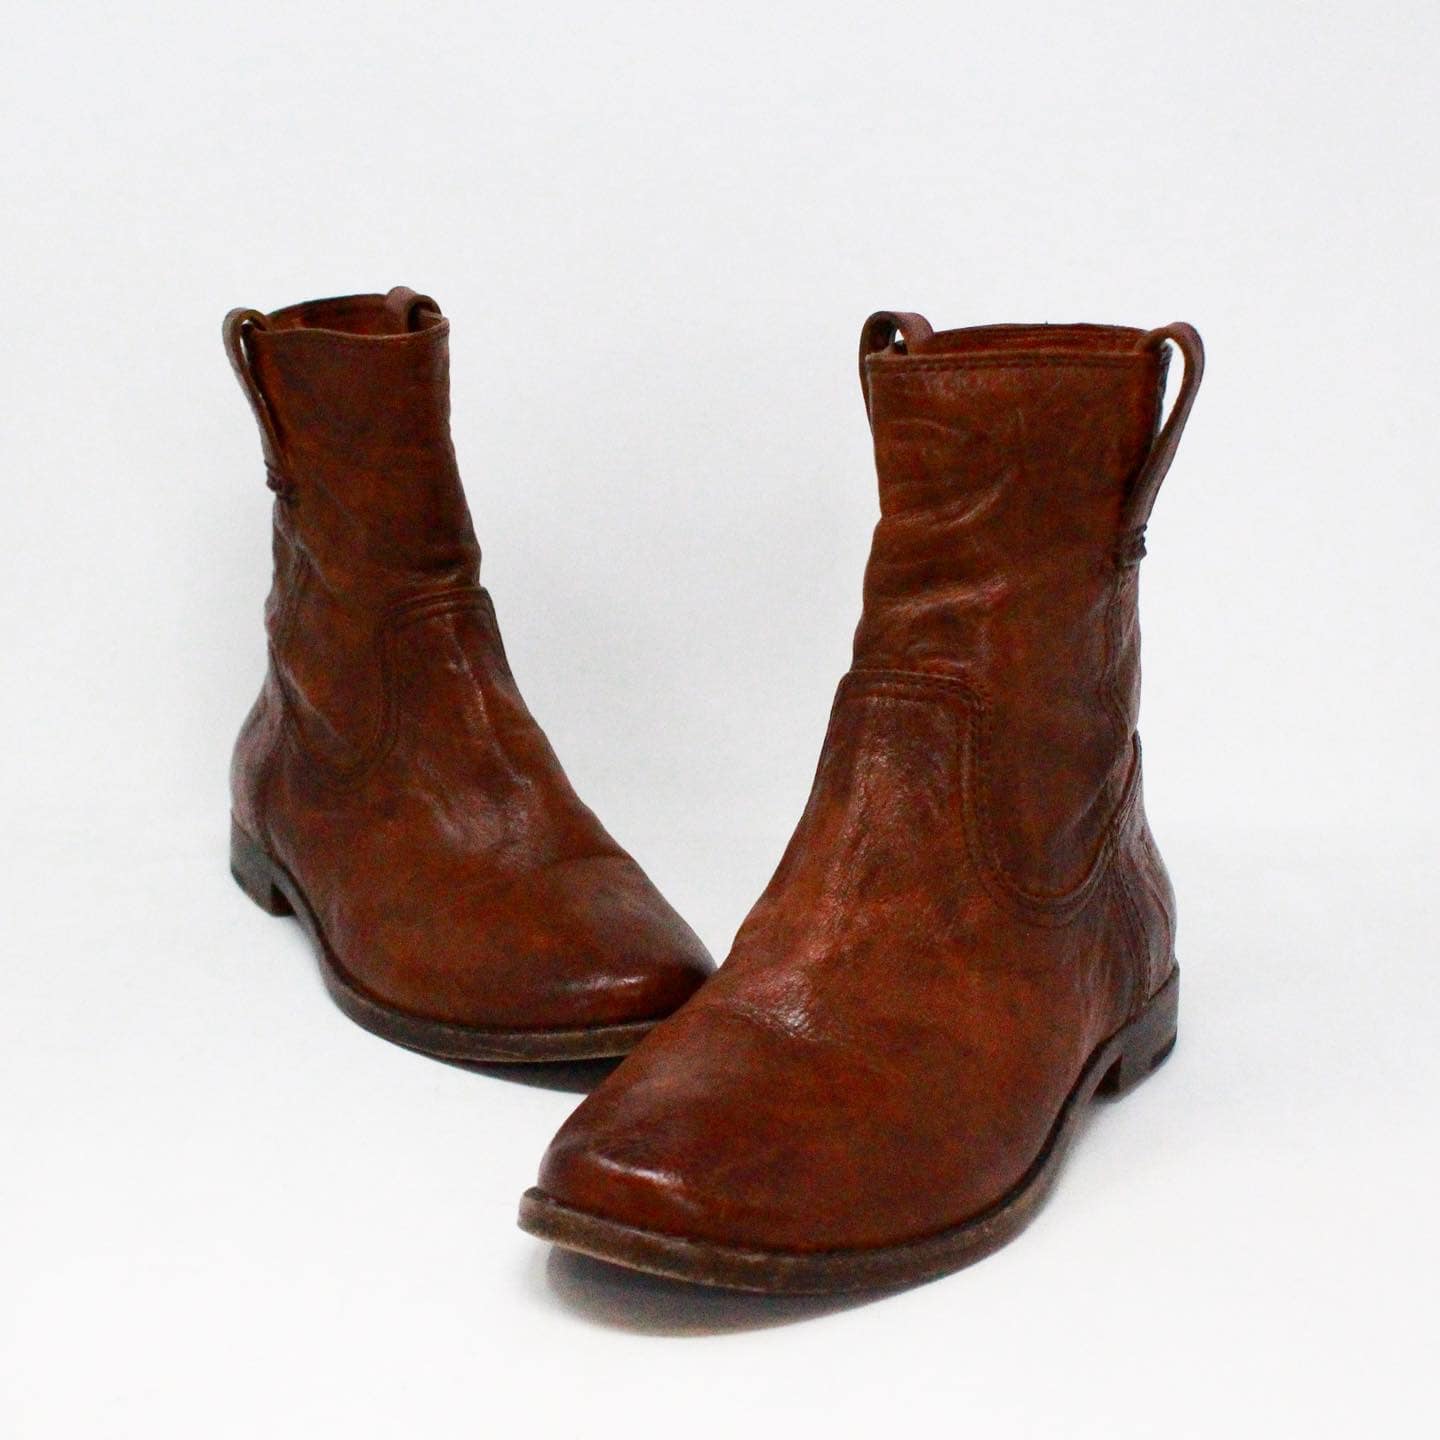 FRYE 38338 Brown Leather Booties US 8 EU 38 1